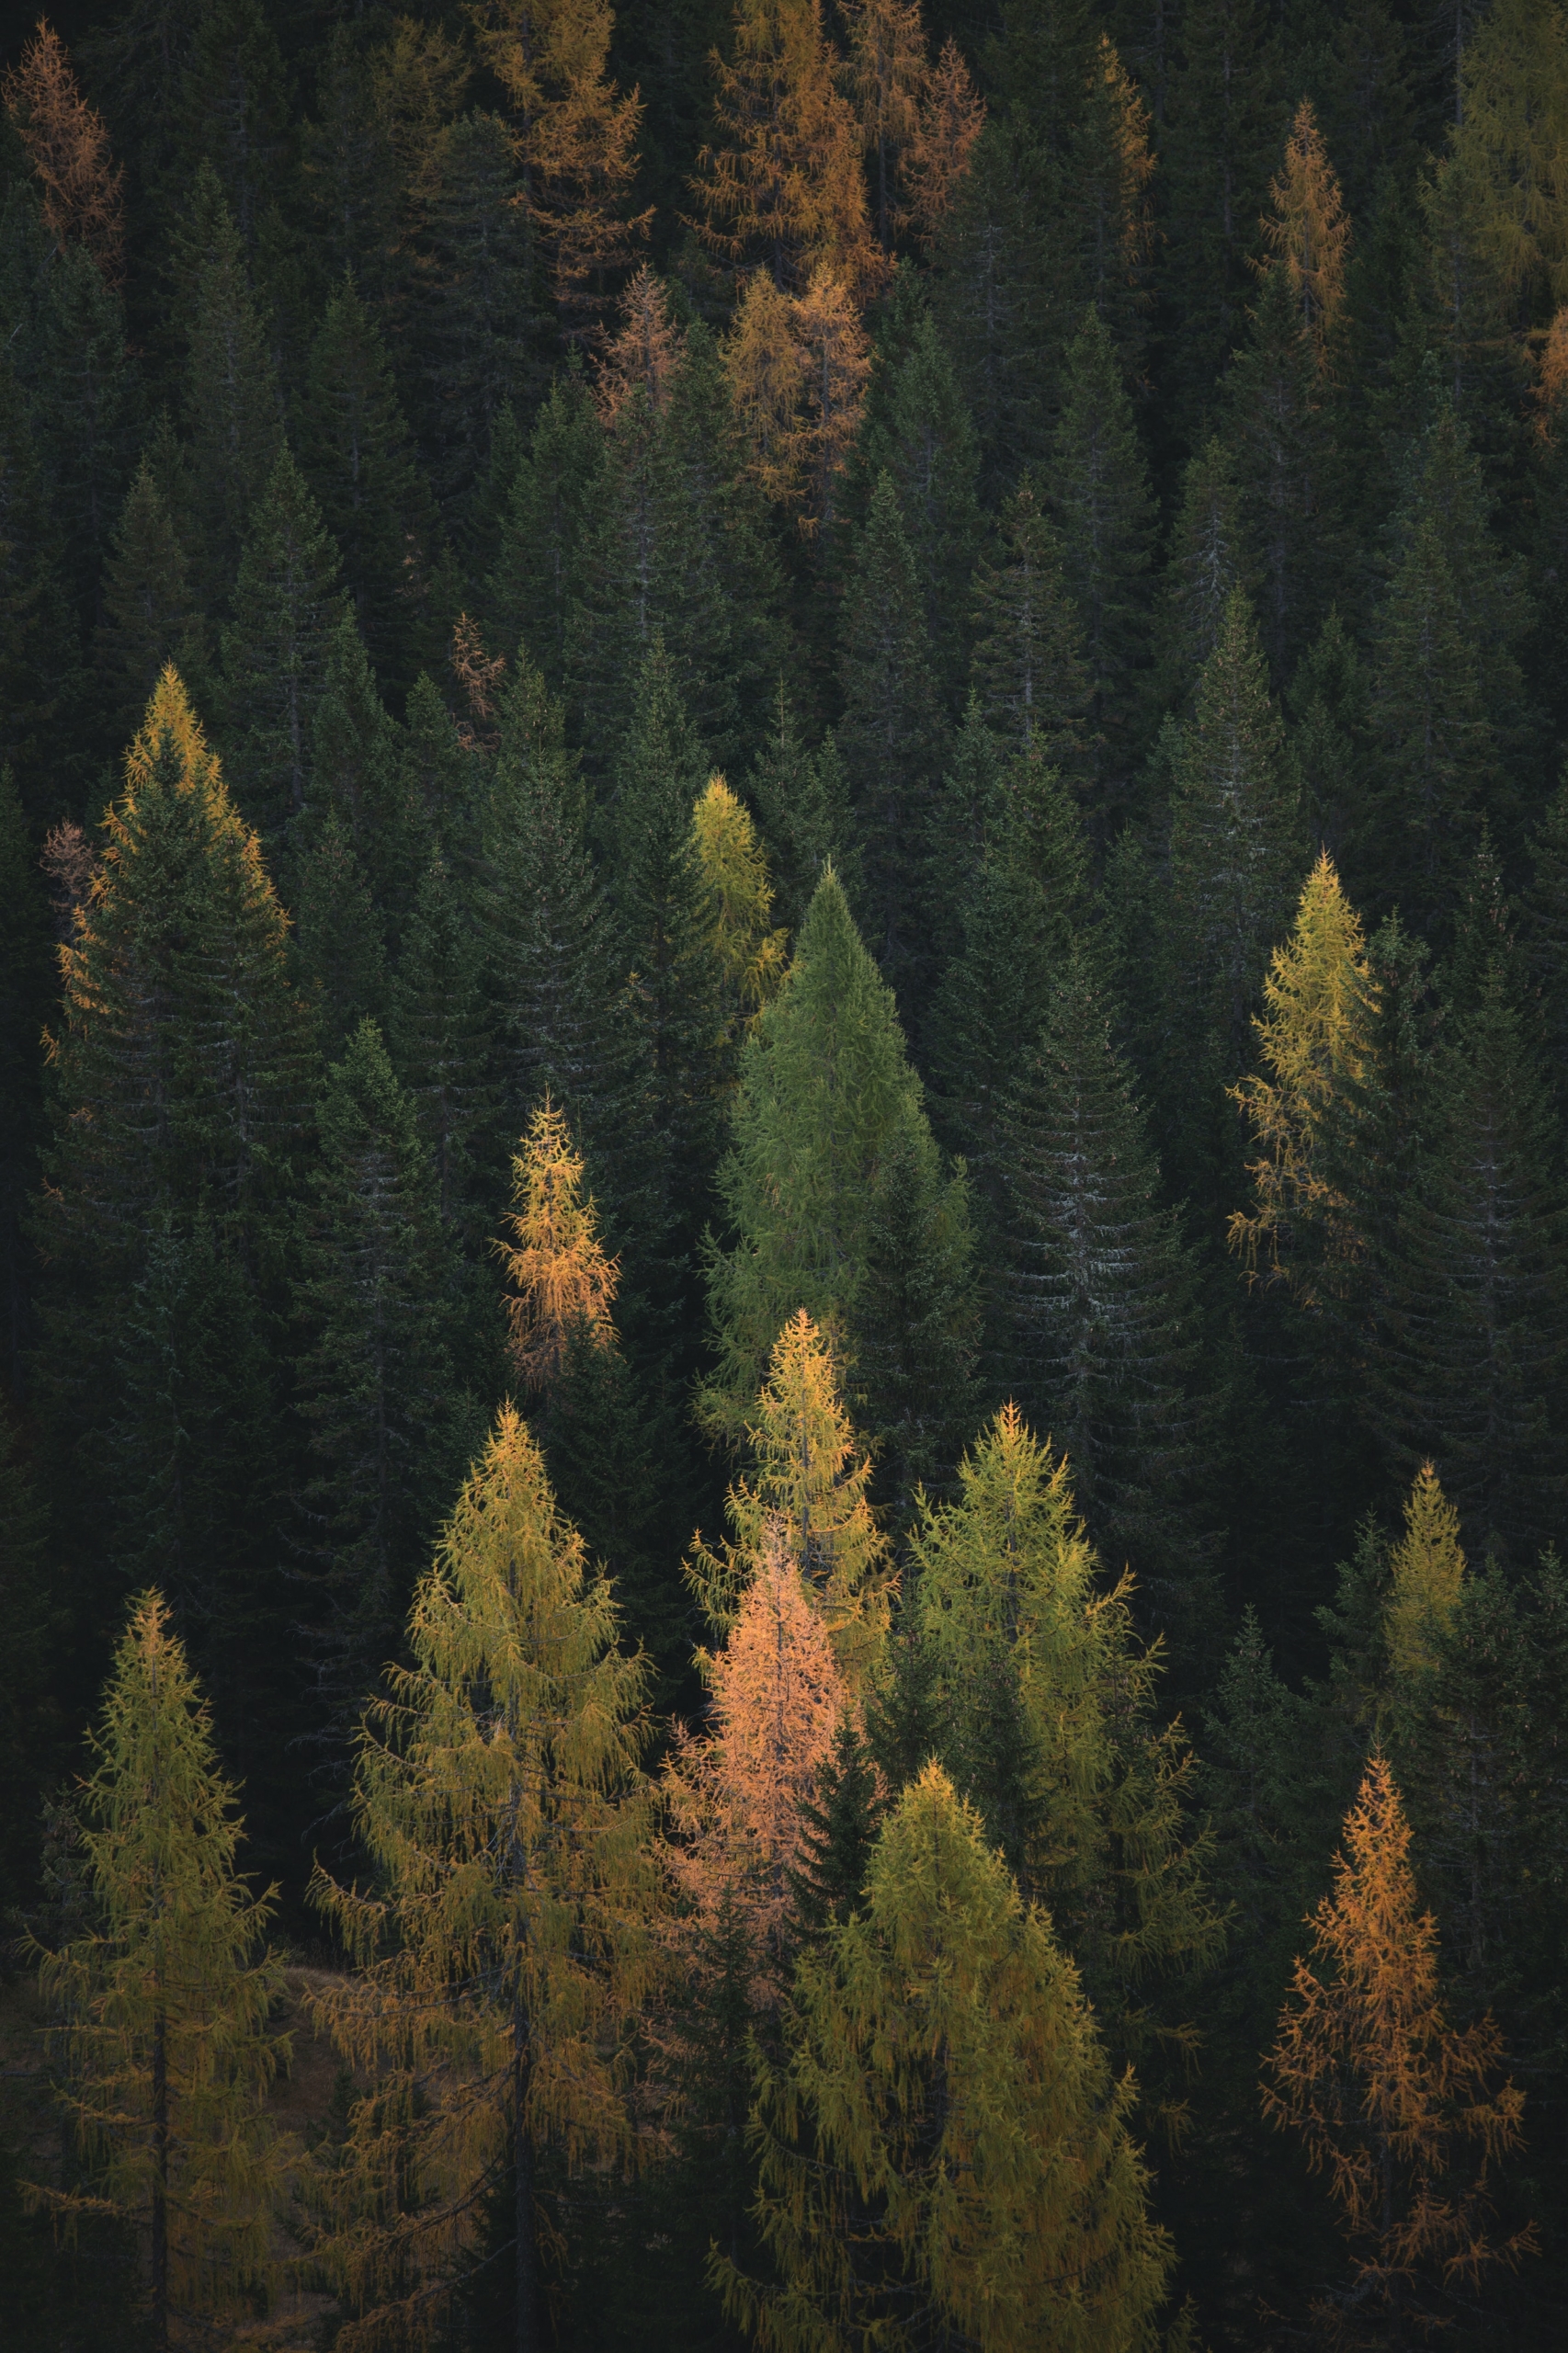 Aufnahme eines Waldes mit vielen hohen Bäumen unterschiedlicher Farbe